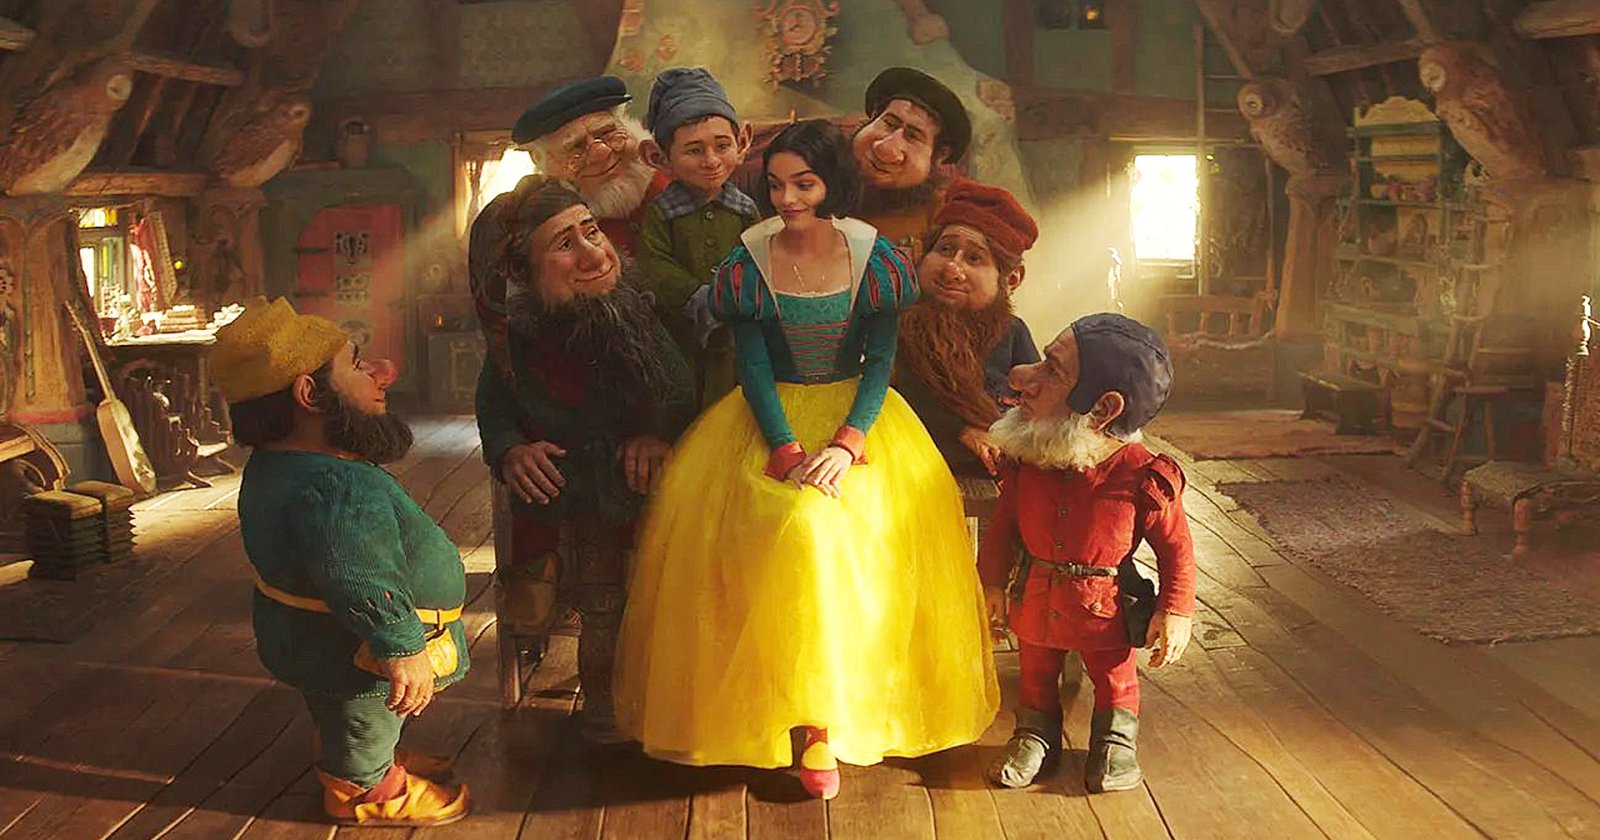 ภาพแรกของ ‘Snow White’ เวอร์ชันไลฟ์แอ็กชัน กลายเป็นประเด็นร้อนแรงในโลกออนไลน์